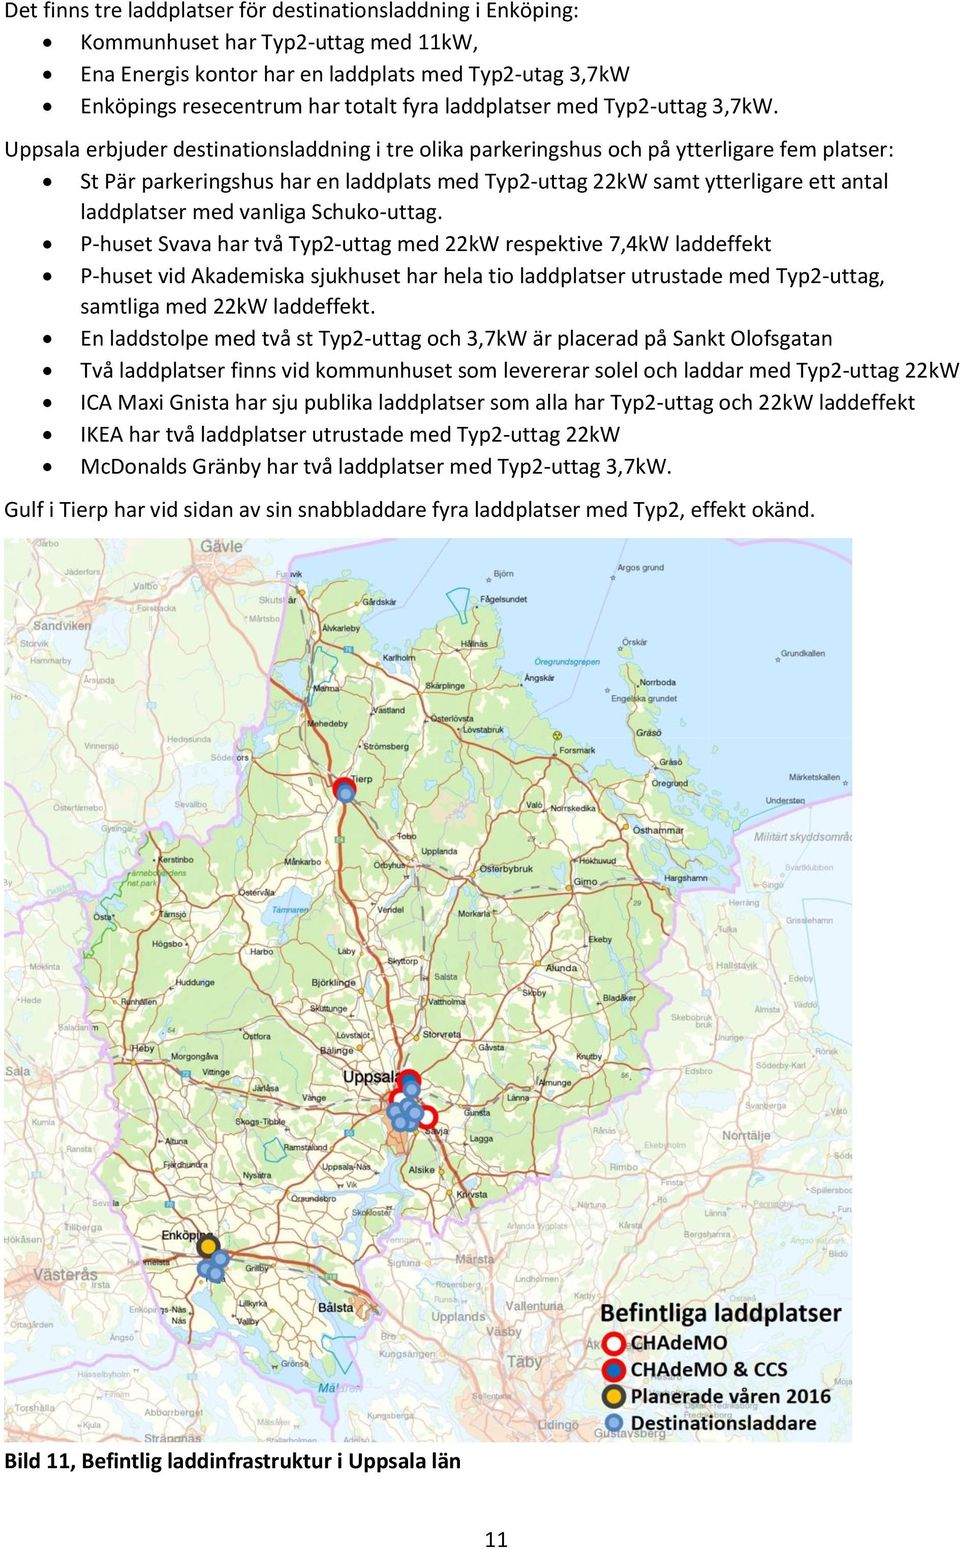 Uppsala erbjuder destinationsladdning i tre olika parkeringshus och på ytterligare fem platser: St Pär parkeringshus har en laddplats med Typ2-uttag 22kW samt ytterligare ett antal laddplatser med